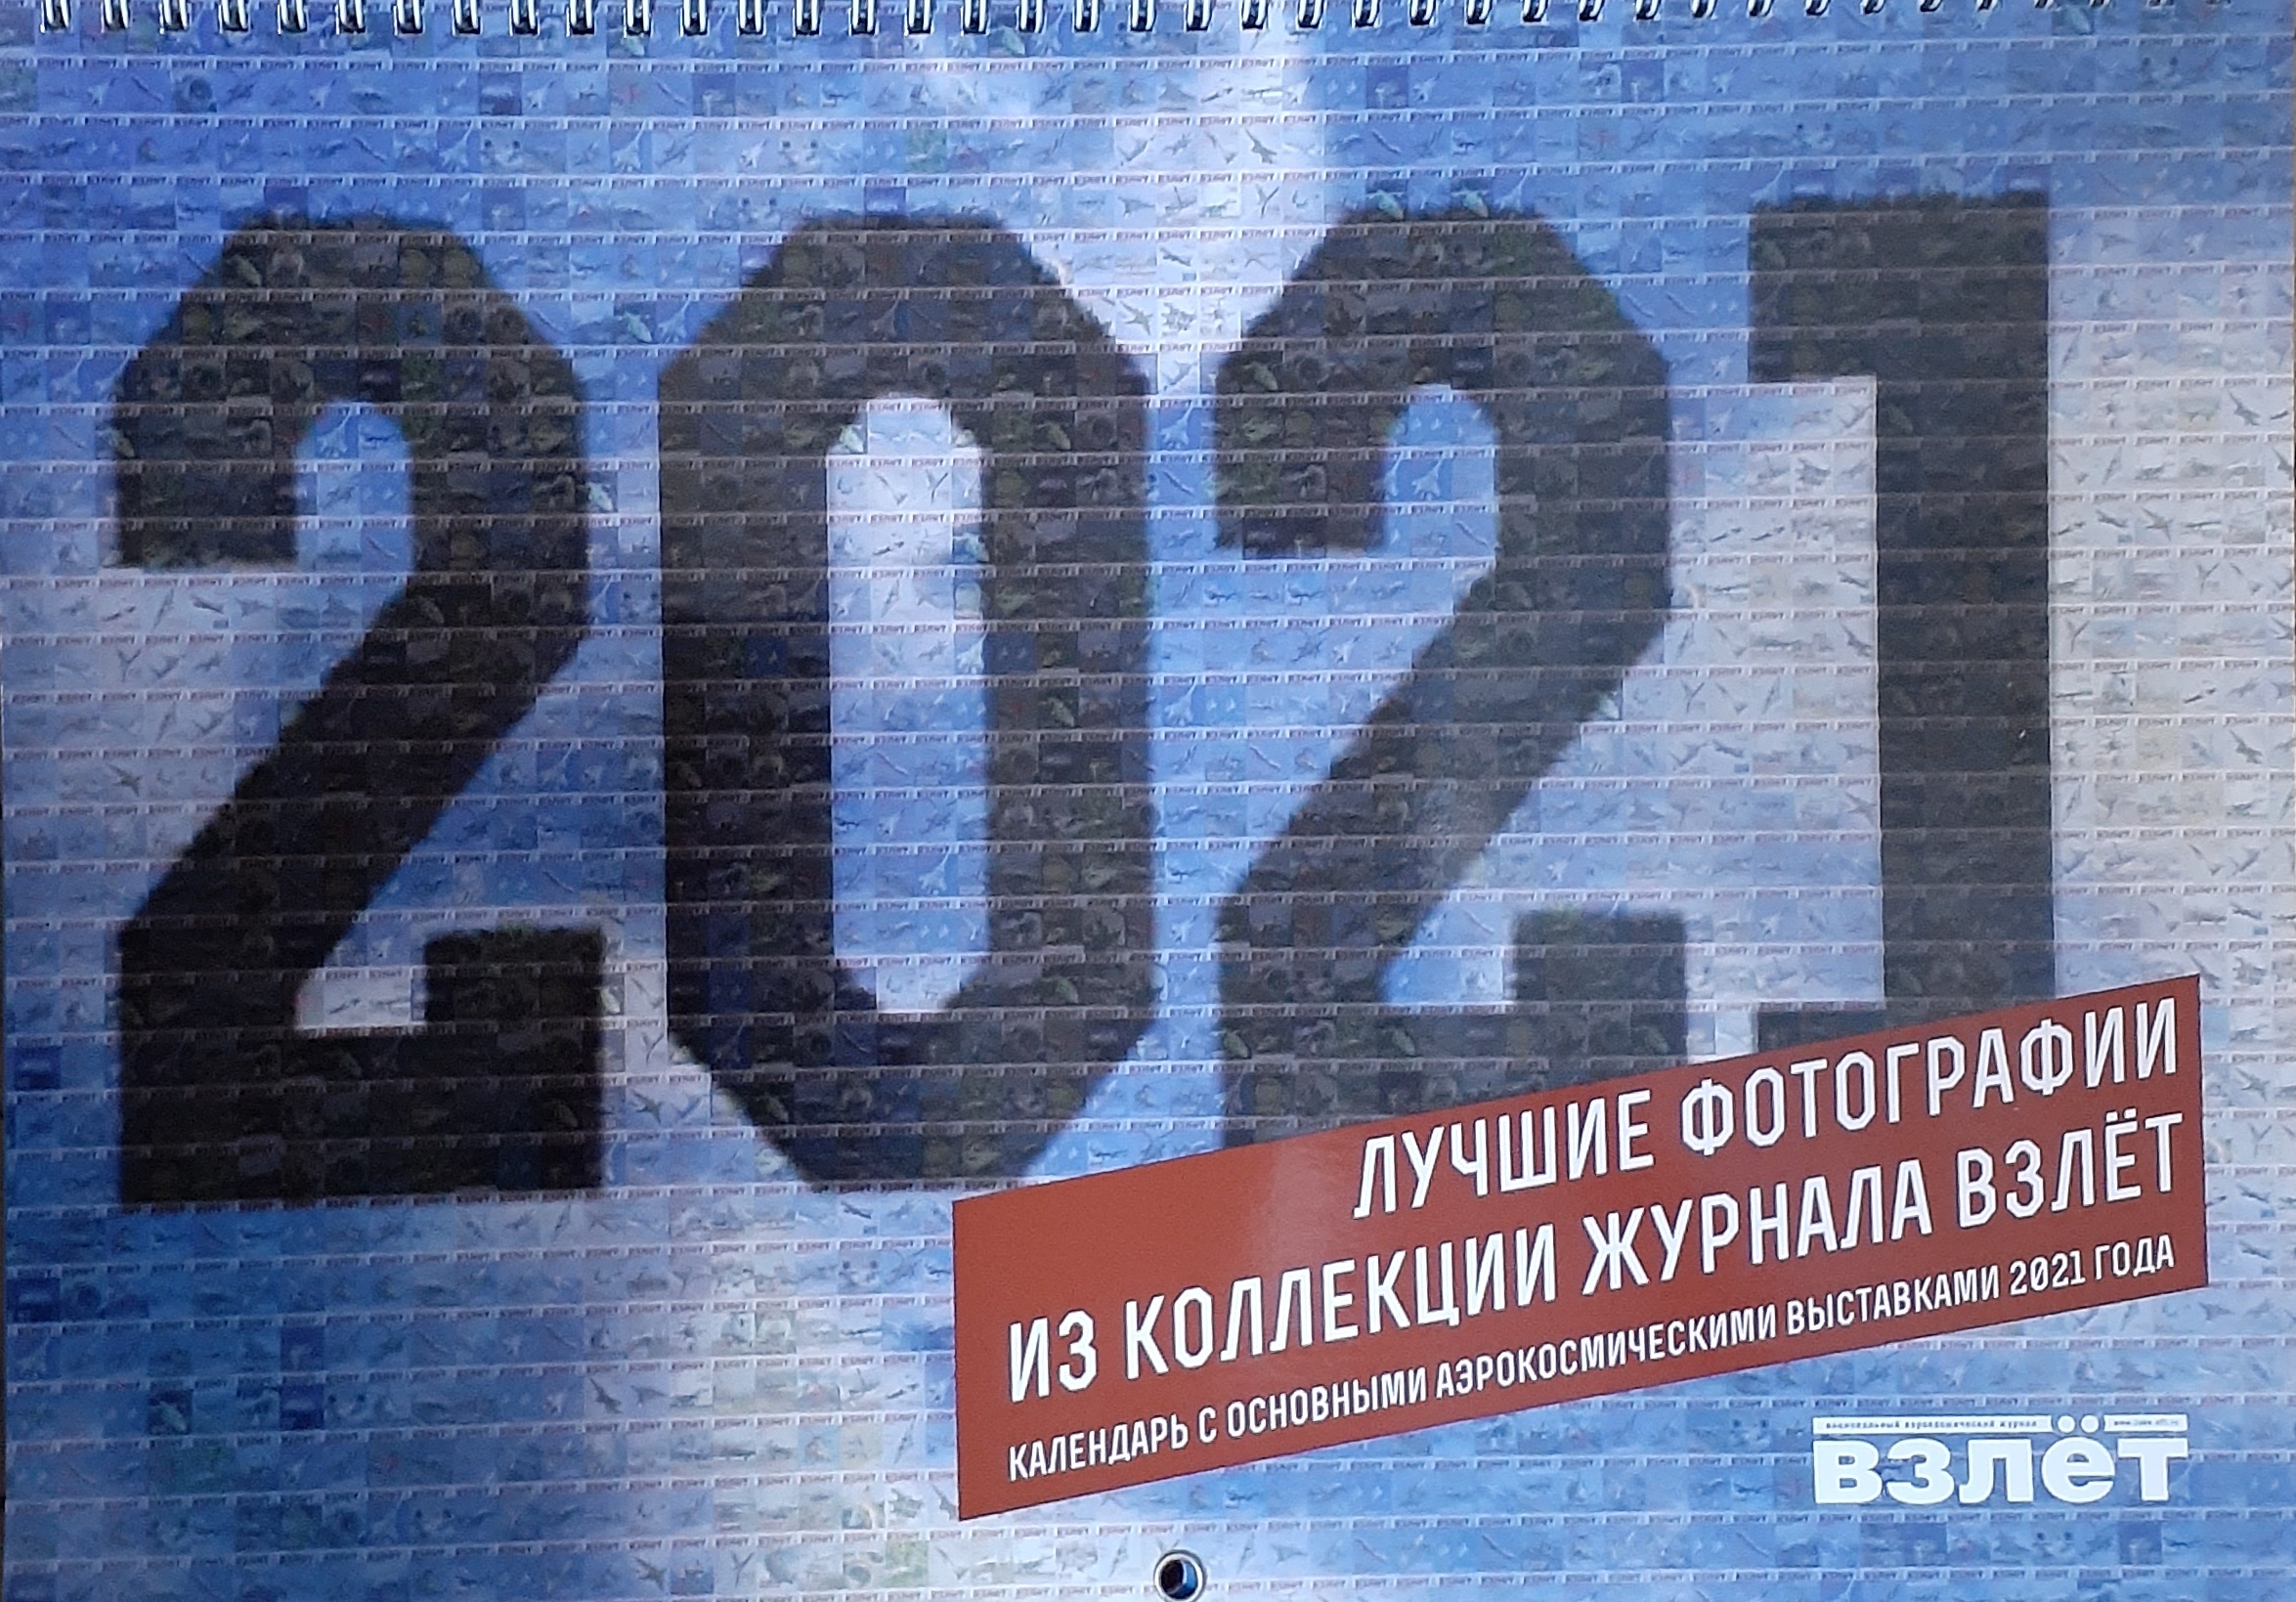 5142008  Календарь "Взлет" на 2021 год